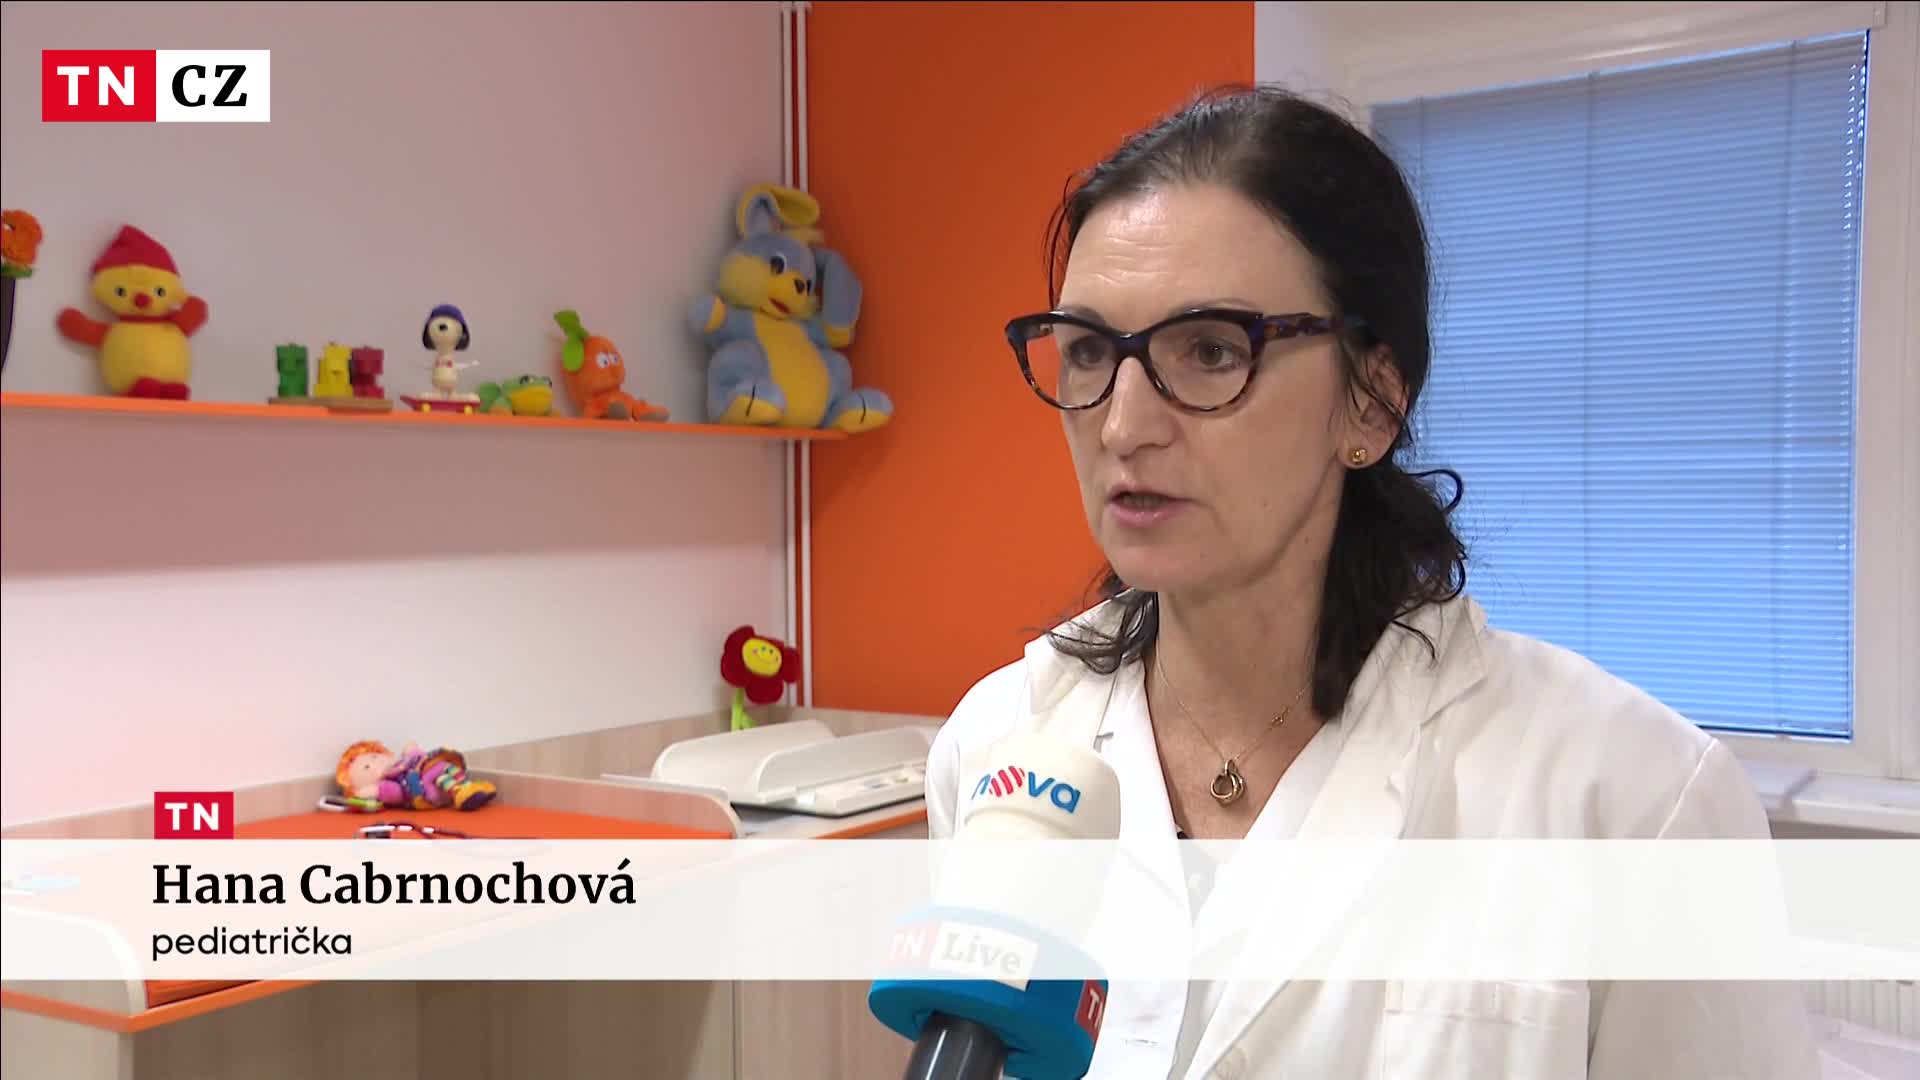 Česko letos zasáhla vlna neštovic. Případů je nejvíce za posledních 10 let